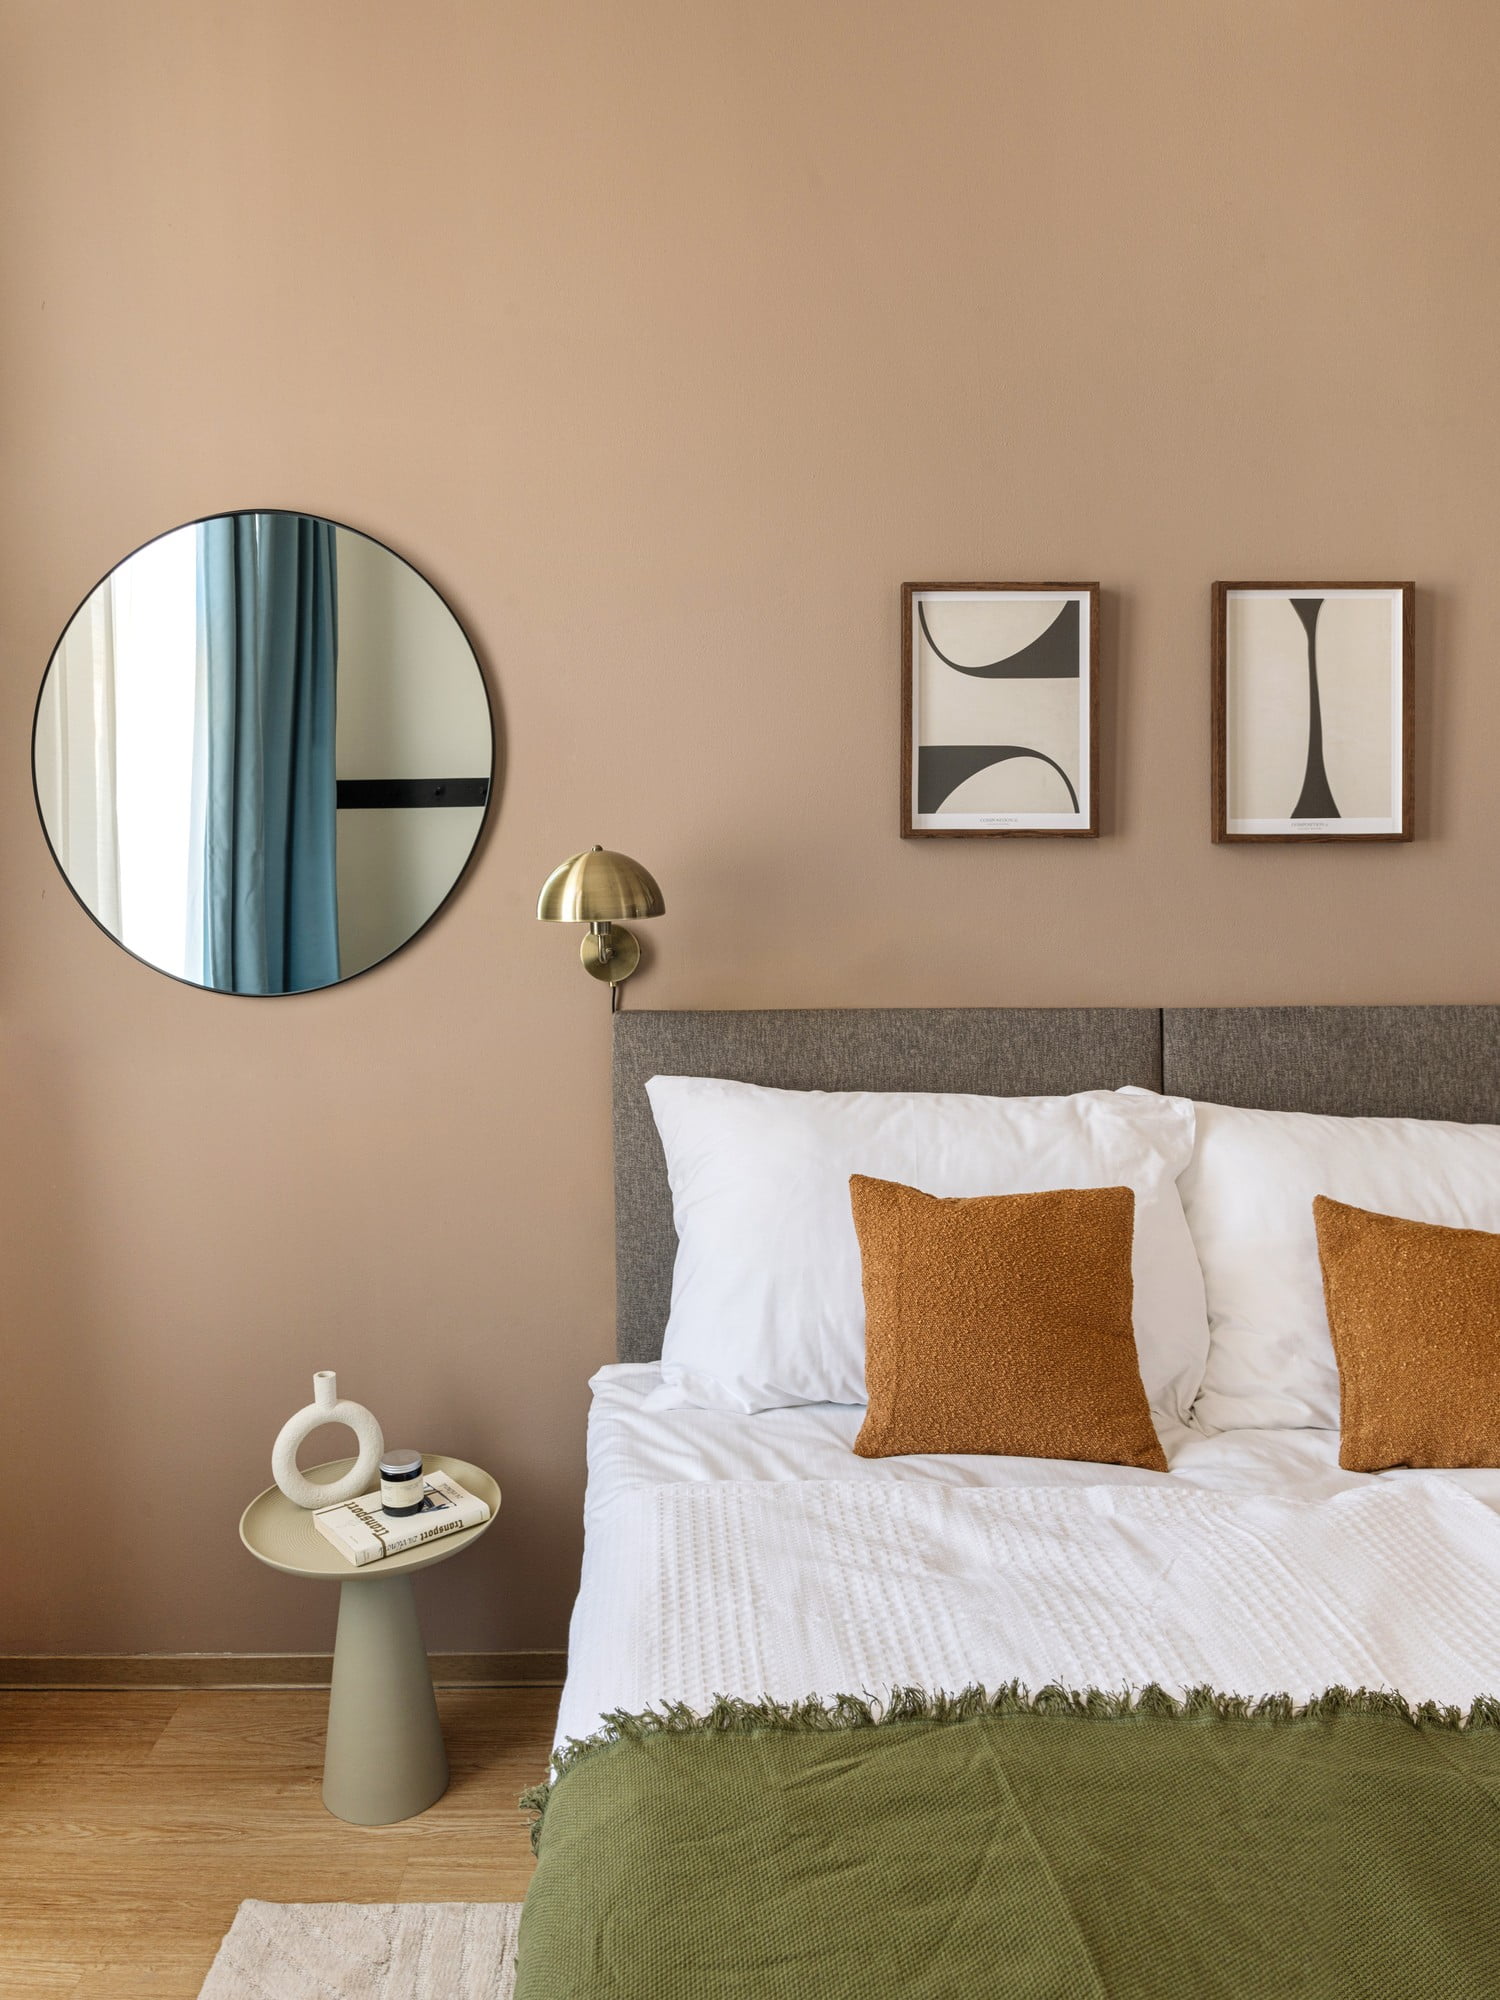 Šiuolaikiniame miegamajame svarbu vizualinė ramybė, kurią pasieksite pasirinkę paprastų linijų baldus be nereikalingų dekoracijų.